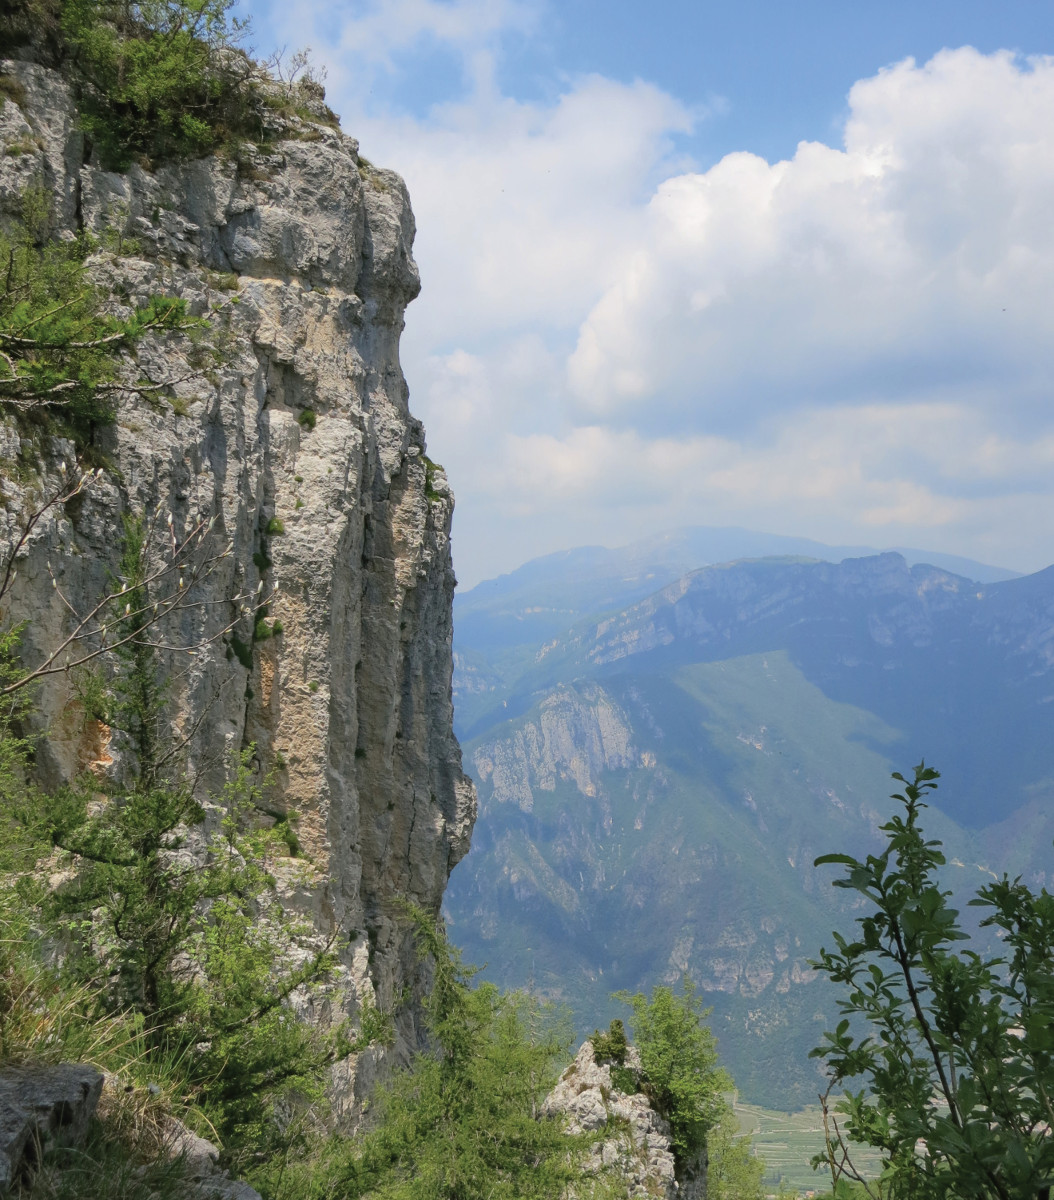 Pannello 6 - Foto 4: La bancata rocciosa carbonatica che si affaccia sulla valle dell'Adige